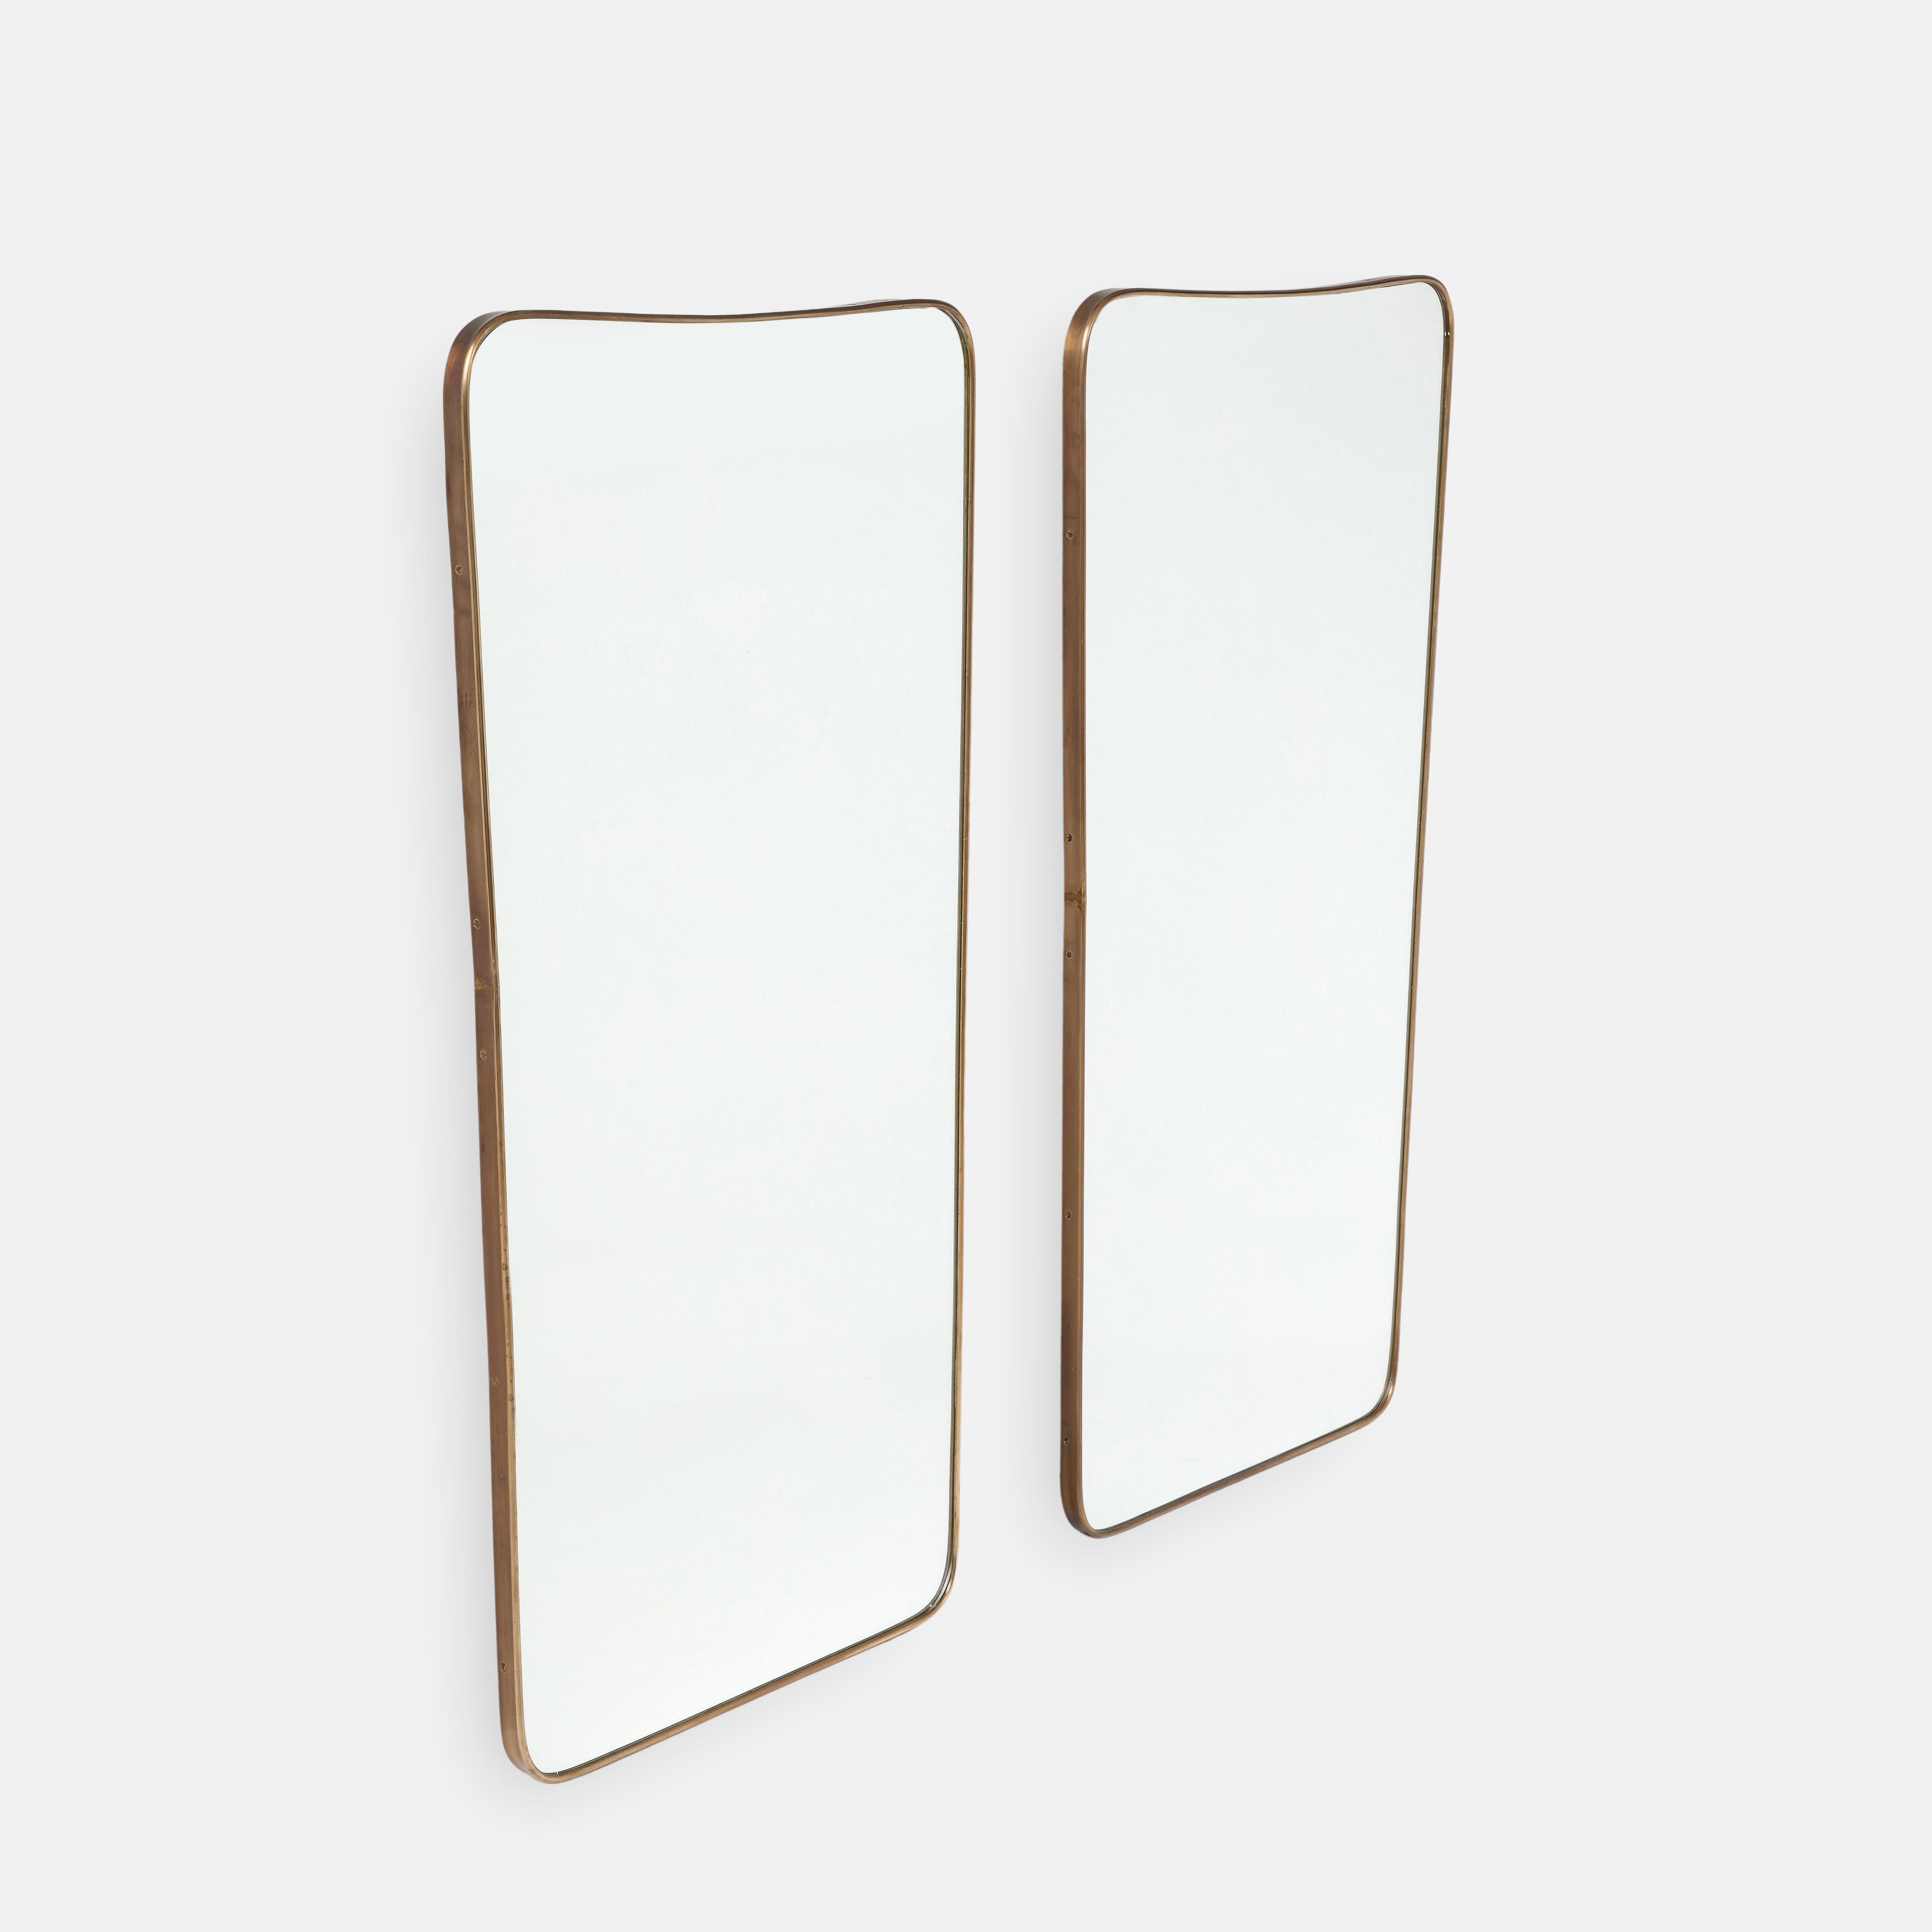 Paire de grands miroirs muraux modernistes italiens des années 1950, composés de cadres en laiton façonnés avec des parties supérieures légèrement arquées et des coins arrondis qui se rétrécissent vers les parties inférieures légèrement arquées.